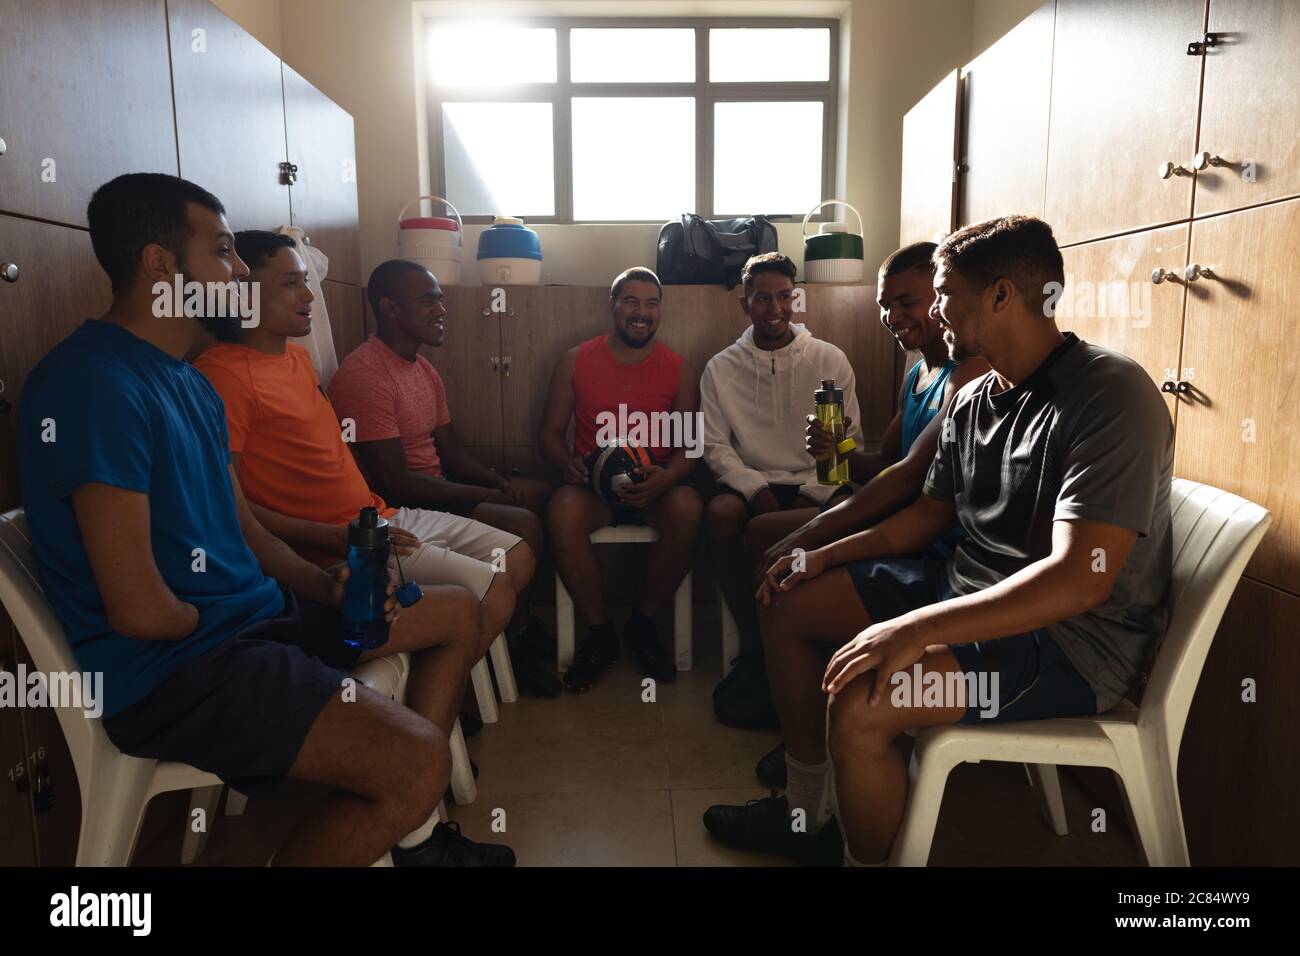 Multiethnische Gruppe von Fußballspielern in Sportkleidung sitzen in Umkleidekabinen während einer Pause im Spiel, halten Ball und Wasserflasche lächelnd t Stockfoto